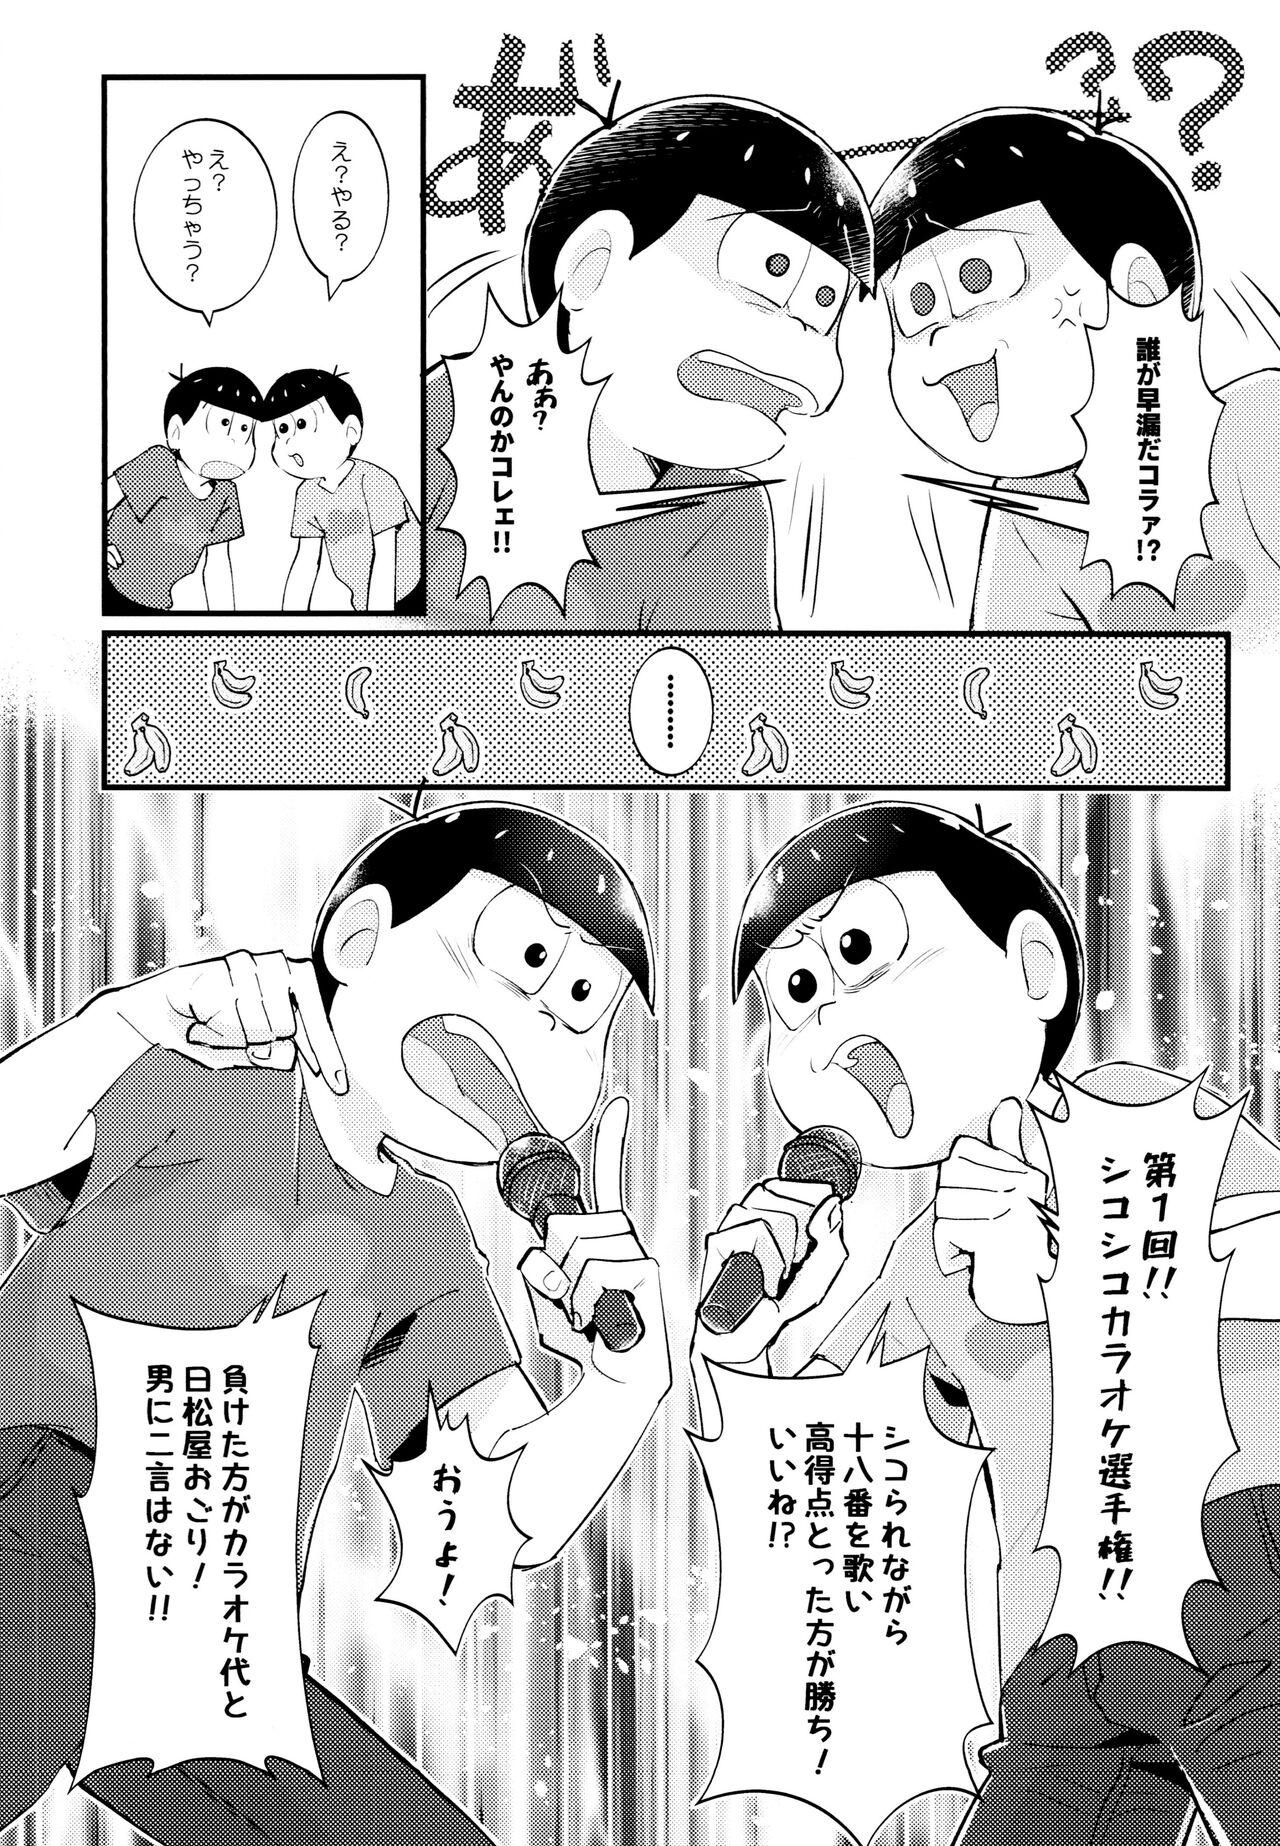 Forwomen Manatsu no!! Shikoshikokaraoke dai batoru!! - Osomatsu san Crossdresser - Page 7